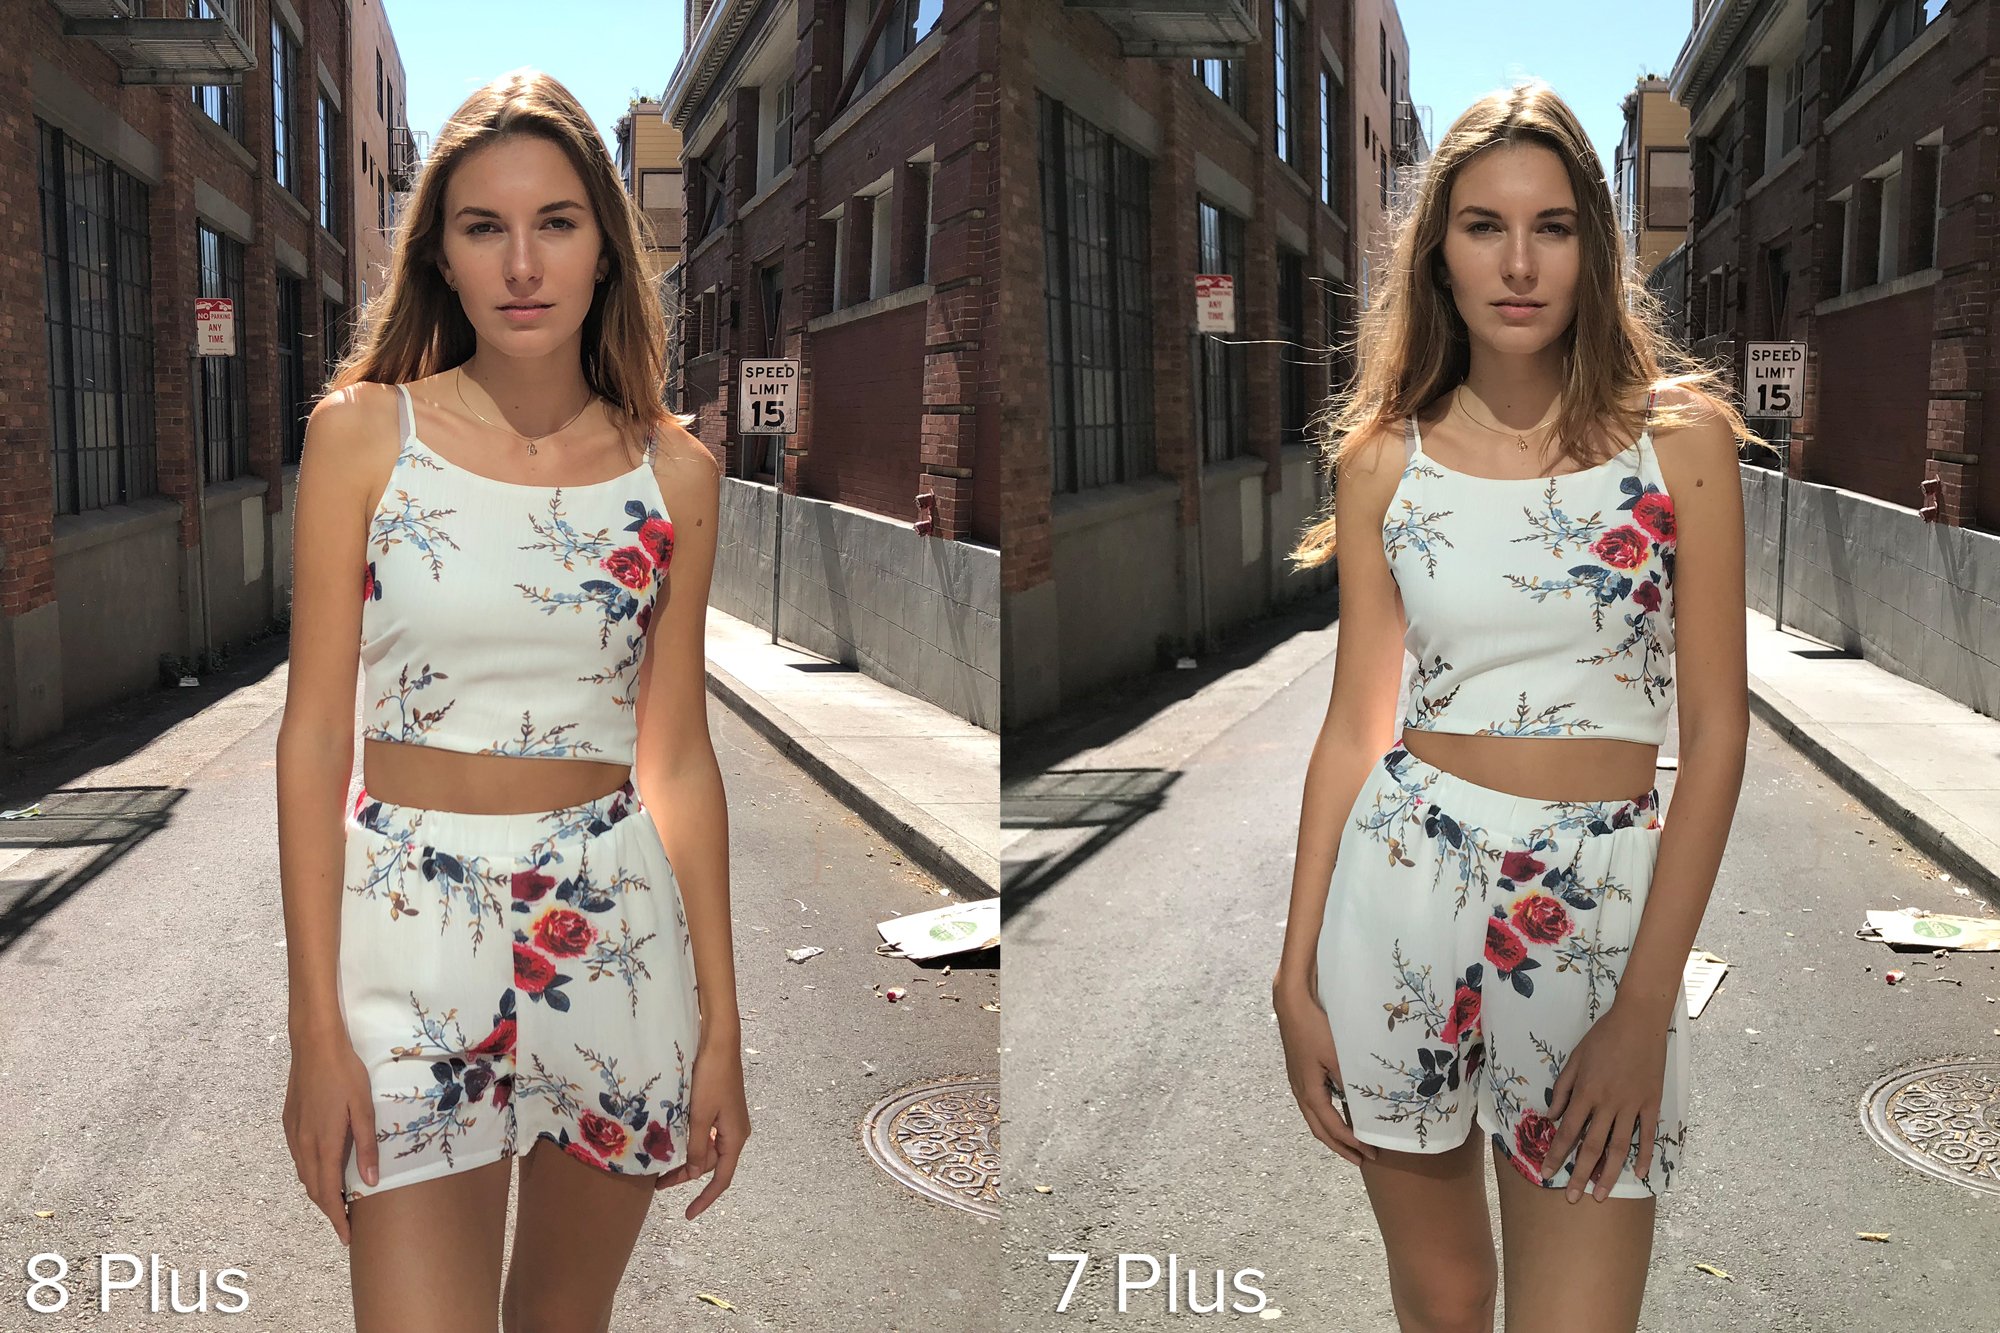 iphone 8 plus photos vs iphone 7 plus 04